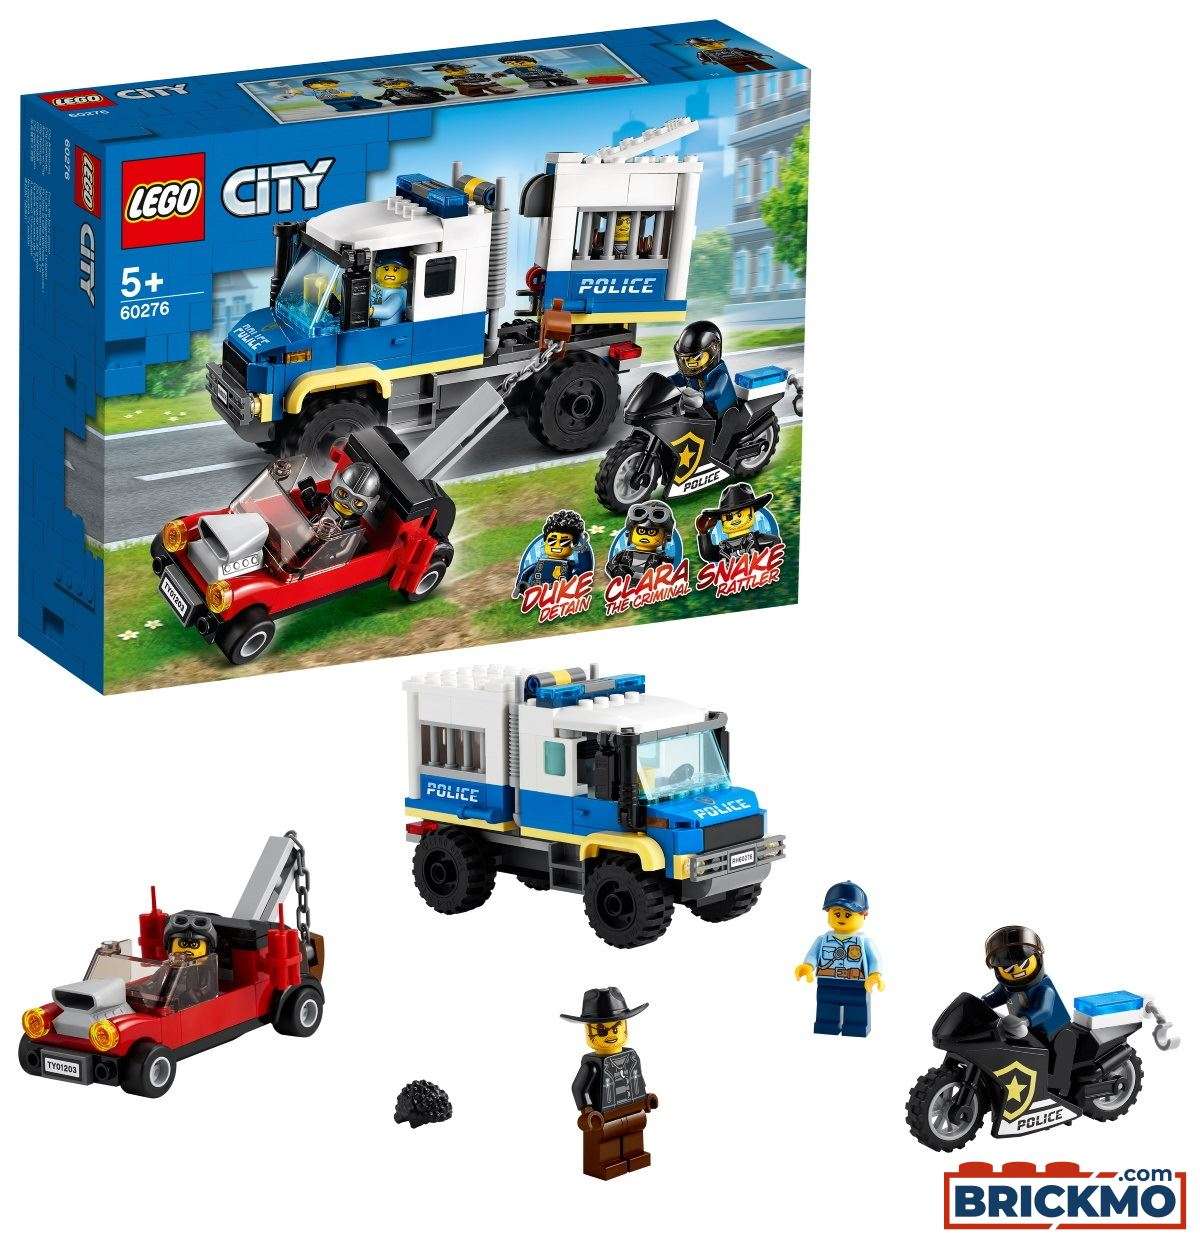 LEGO City 60276 Polizei Gefangenentransporter 60276